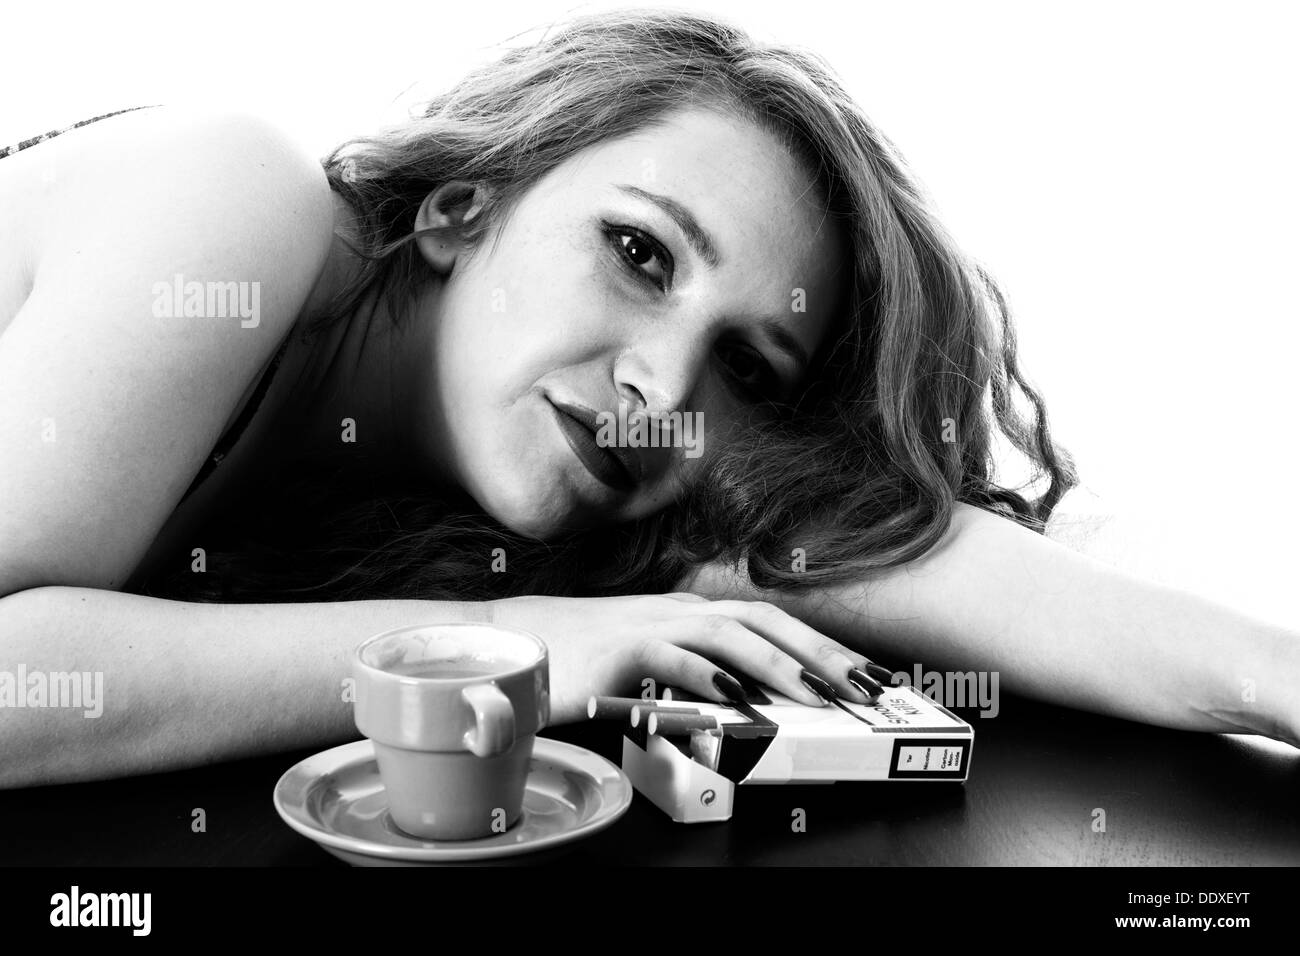 Giovane Donna con capelli rossi, rilassante con un caffè espresso e sigarette al mattino forte, isolato su bianco Foto Stock